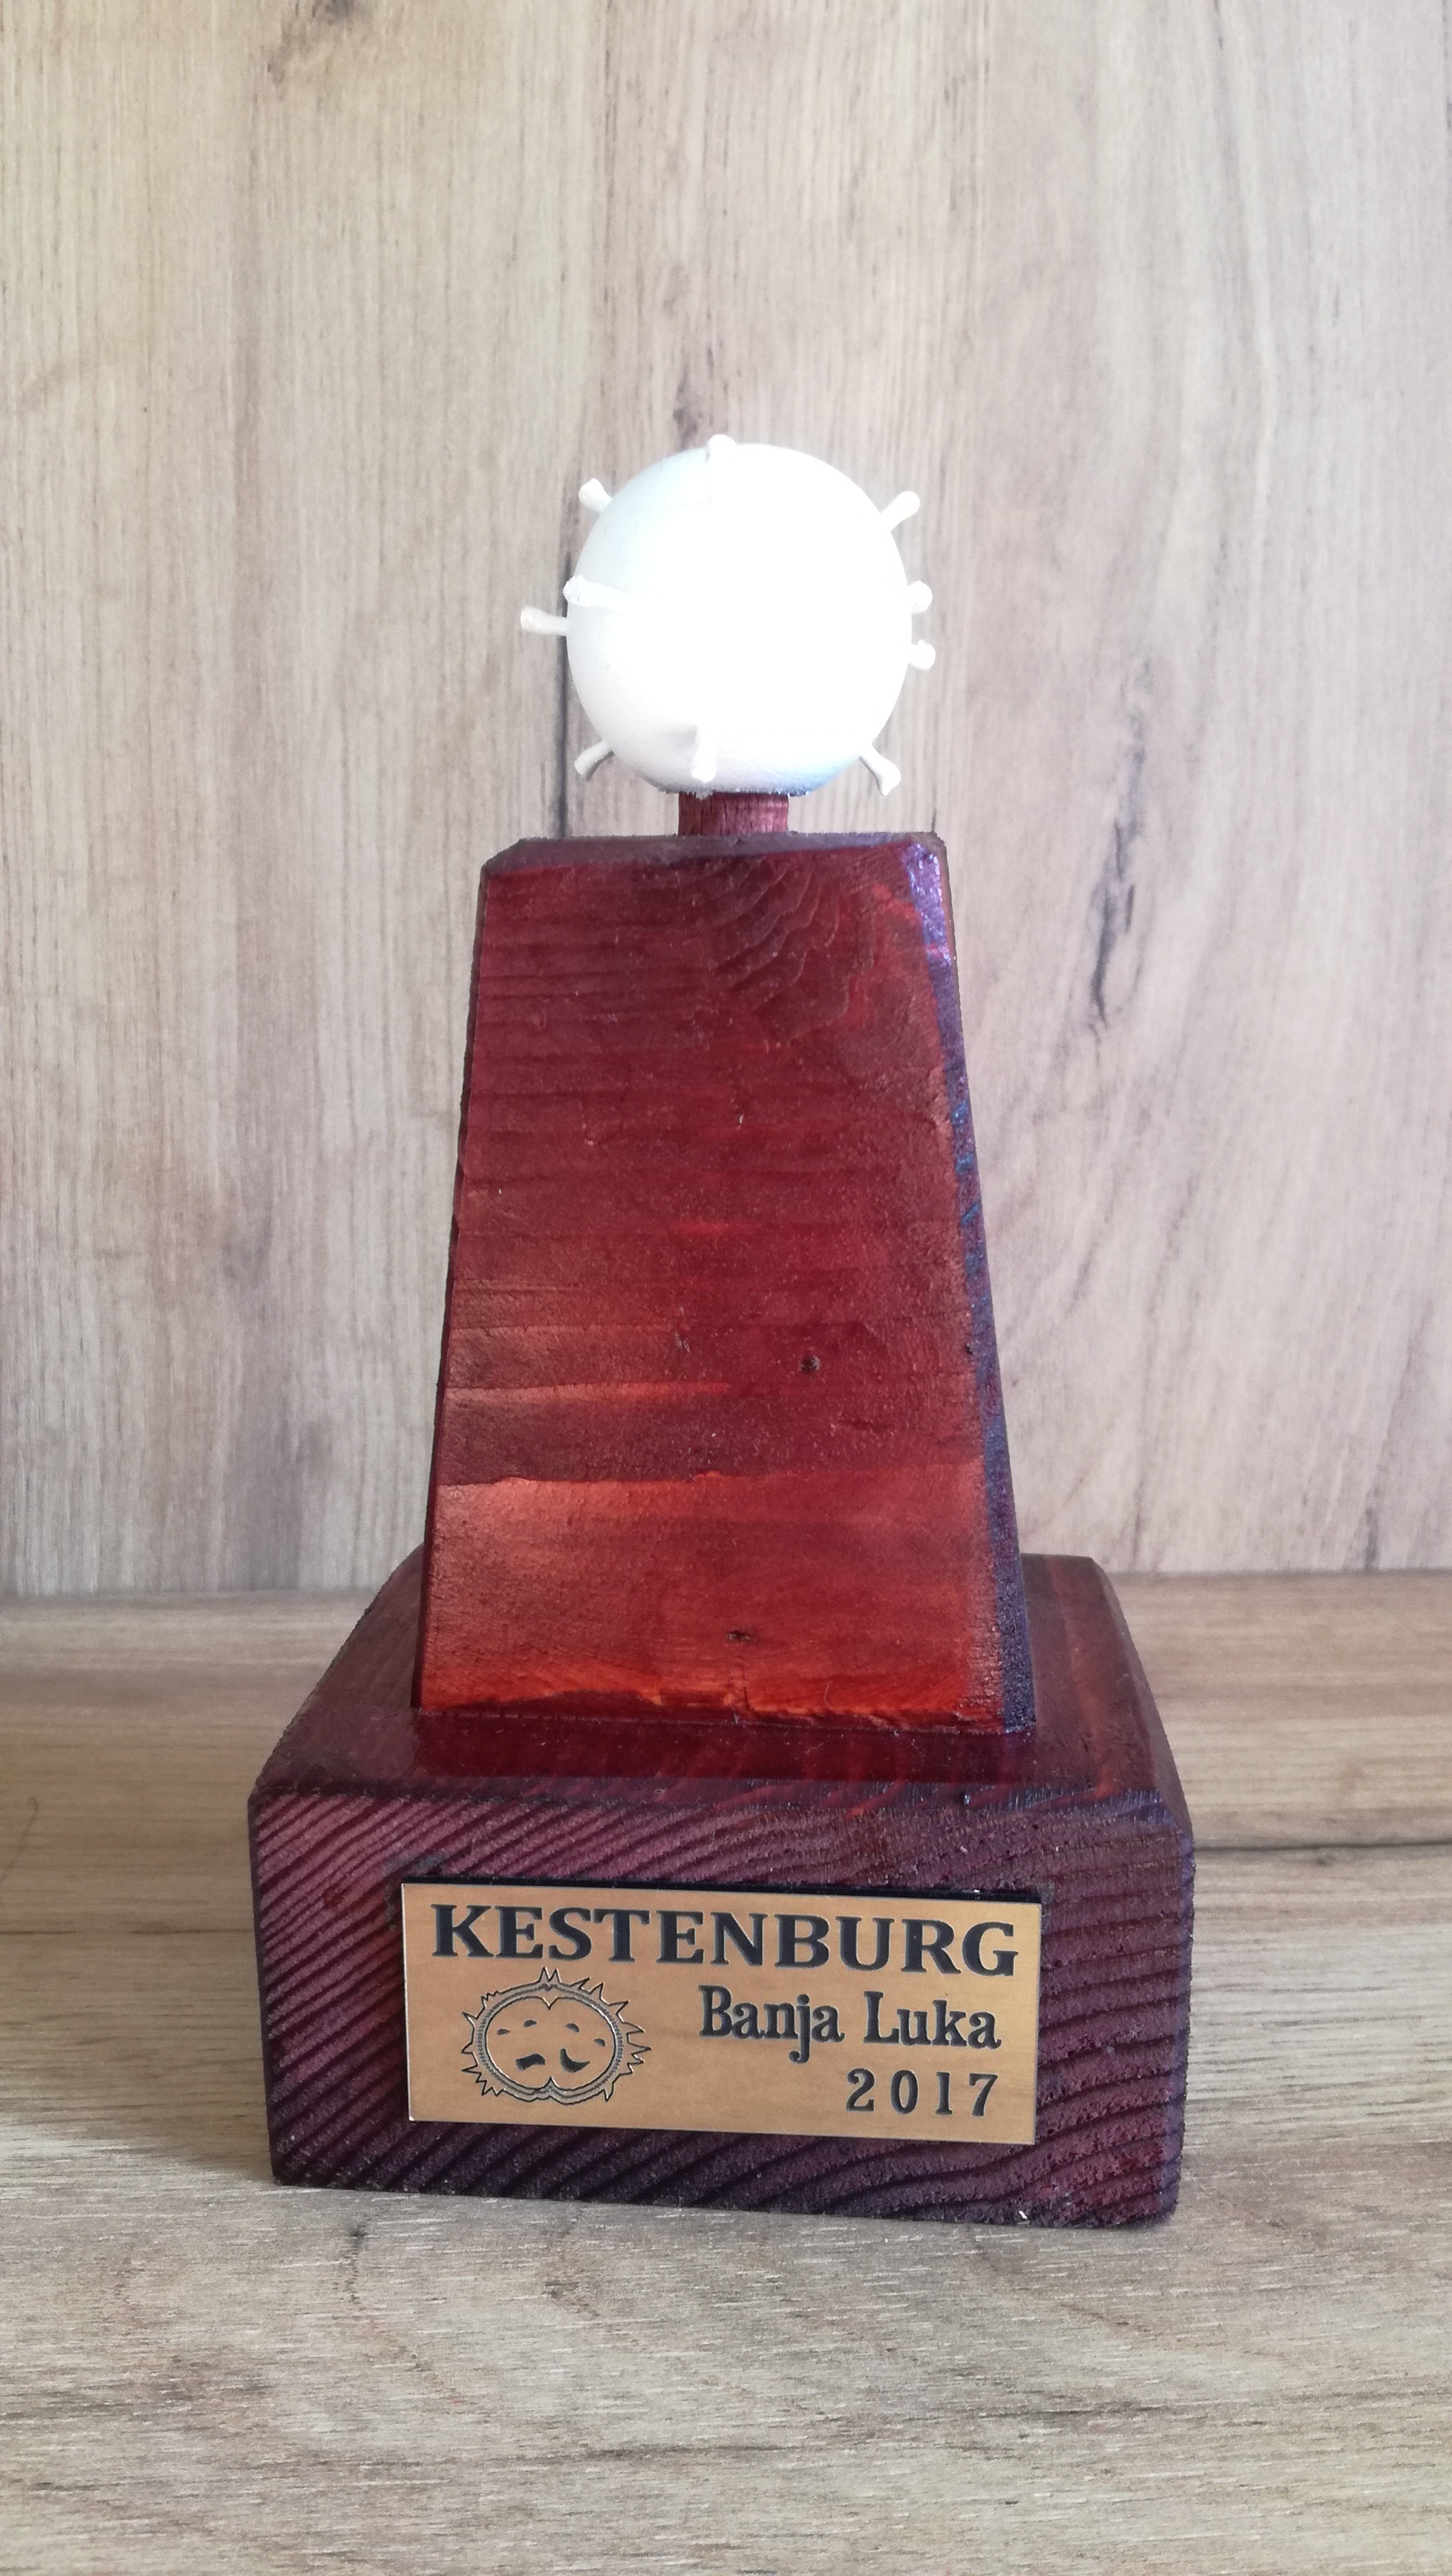 2017 minimum Kestenburg prizas